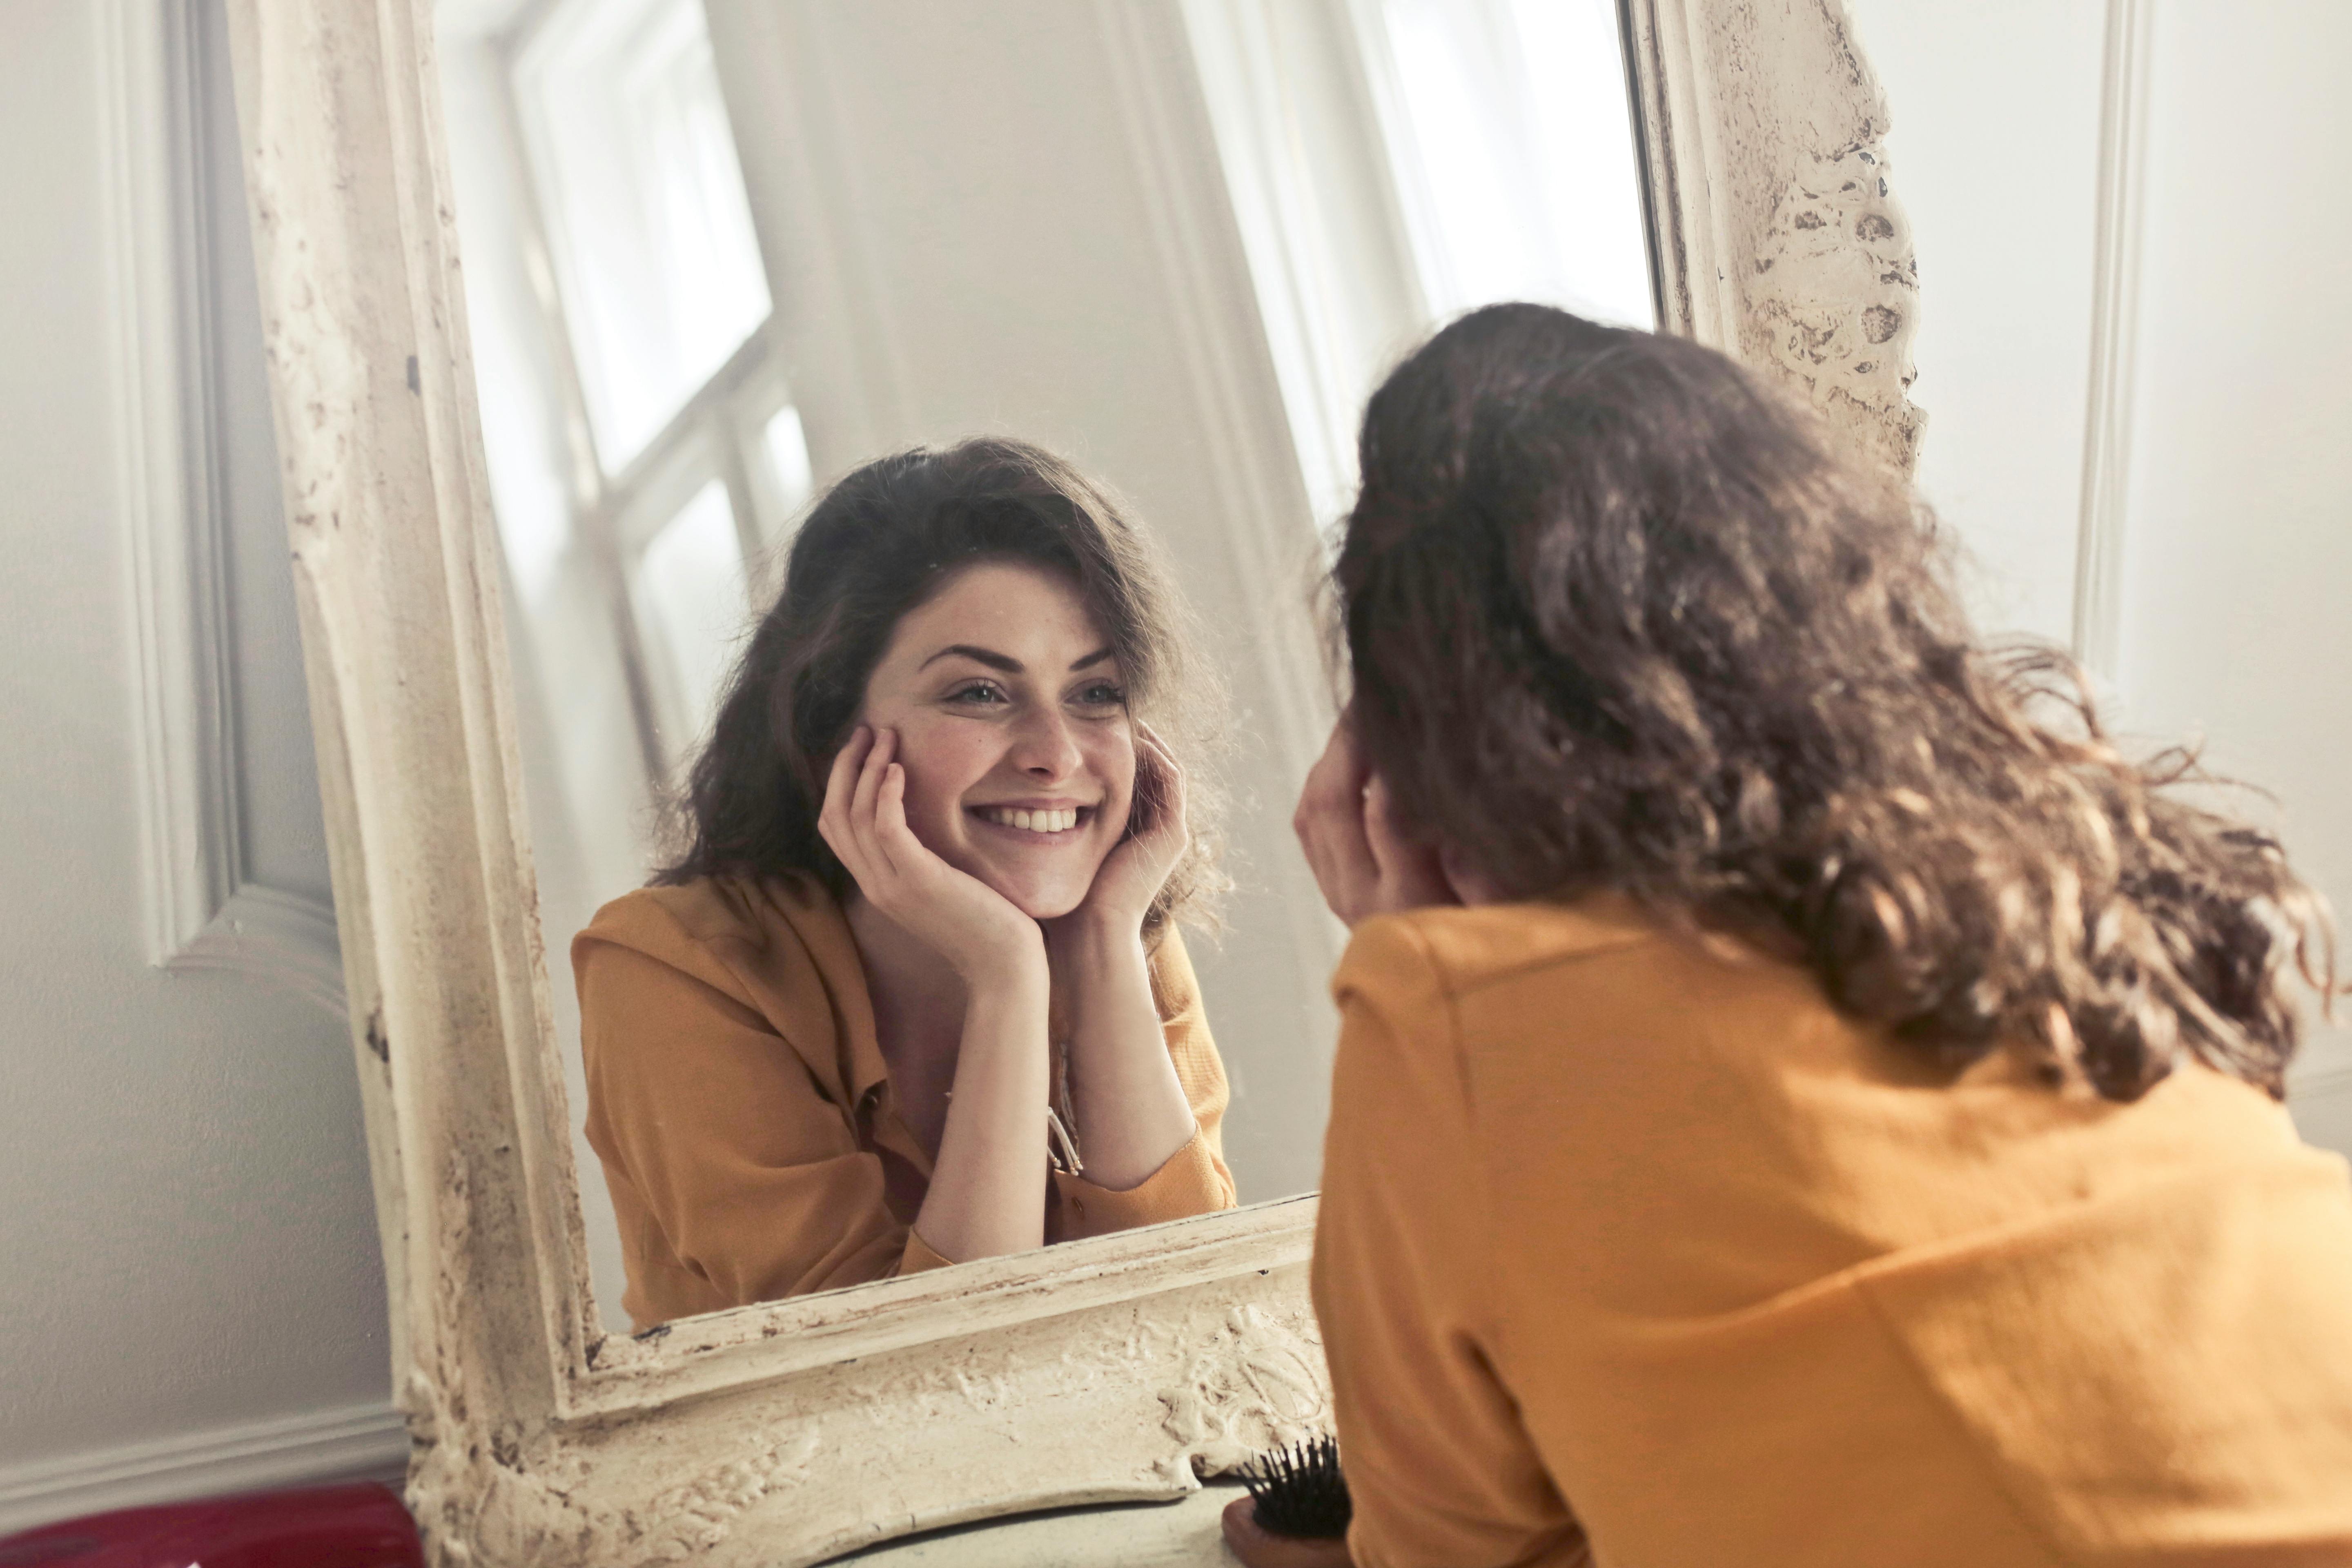 Una mujer feliz sonriendo en el espejo | Fuente: Pexels